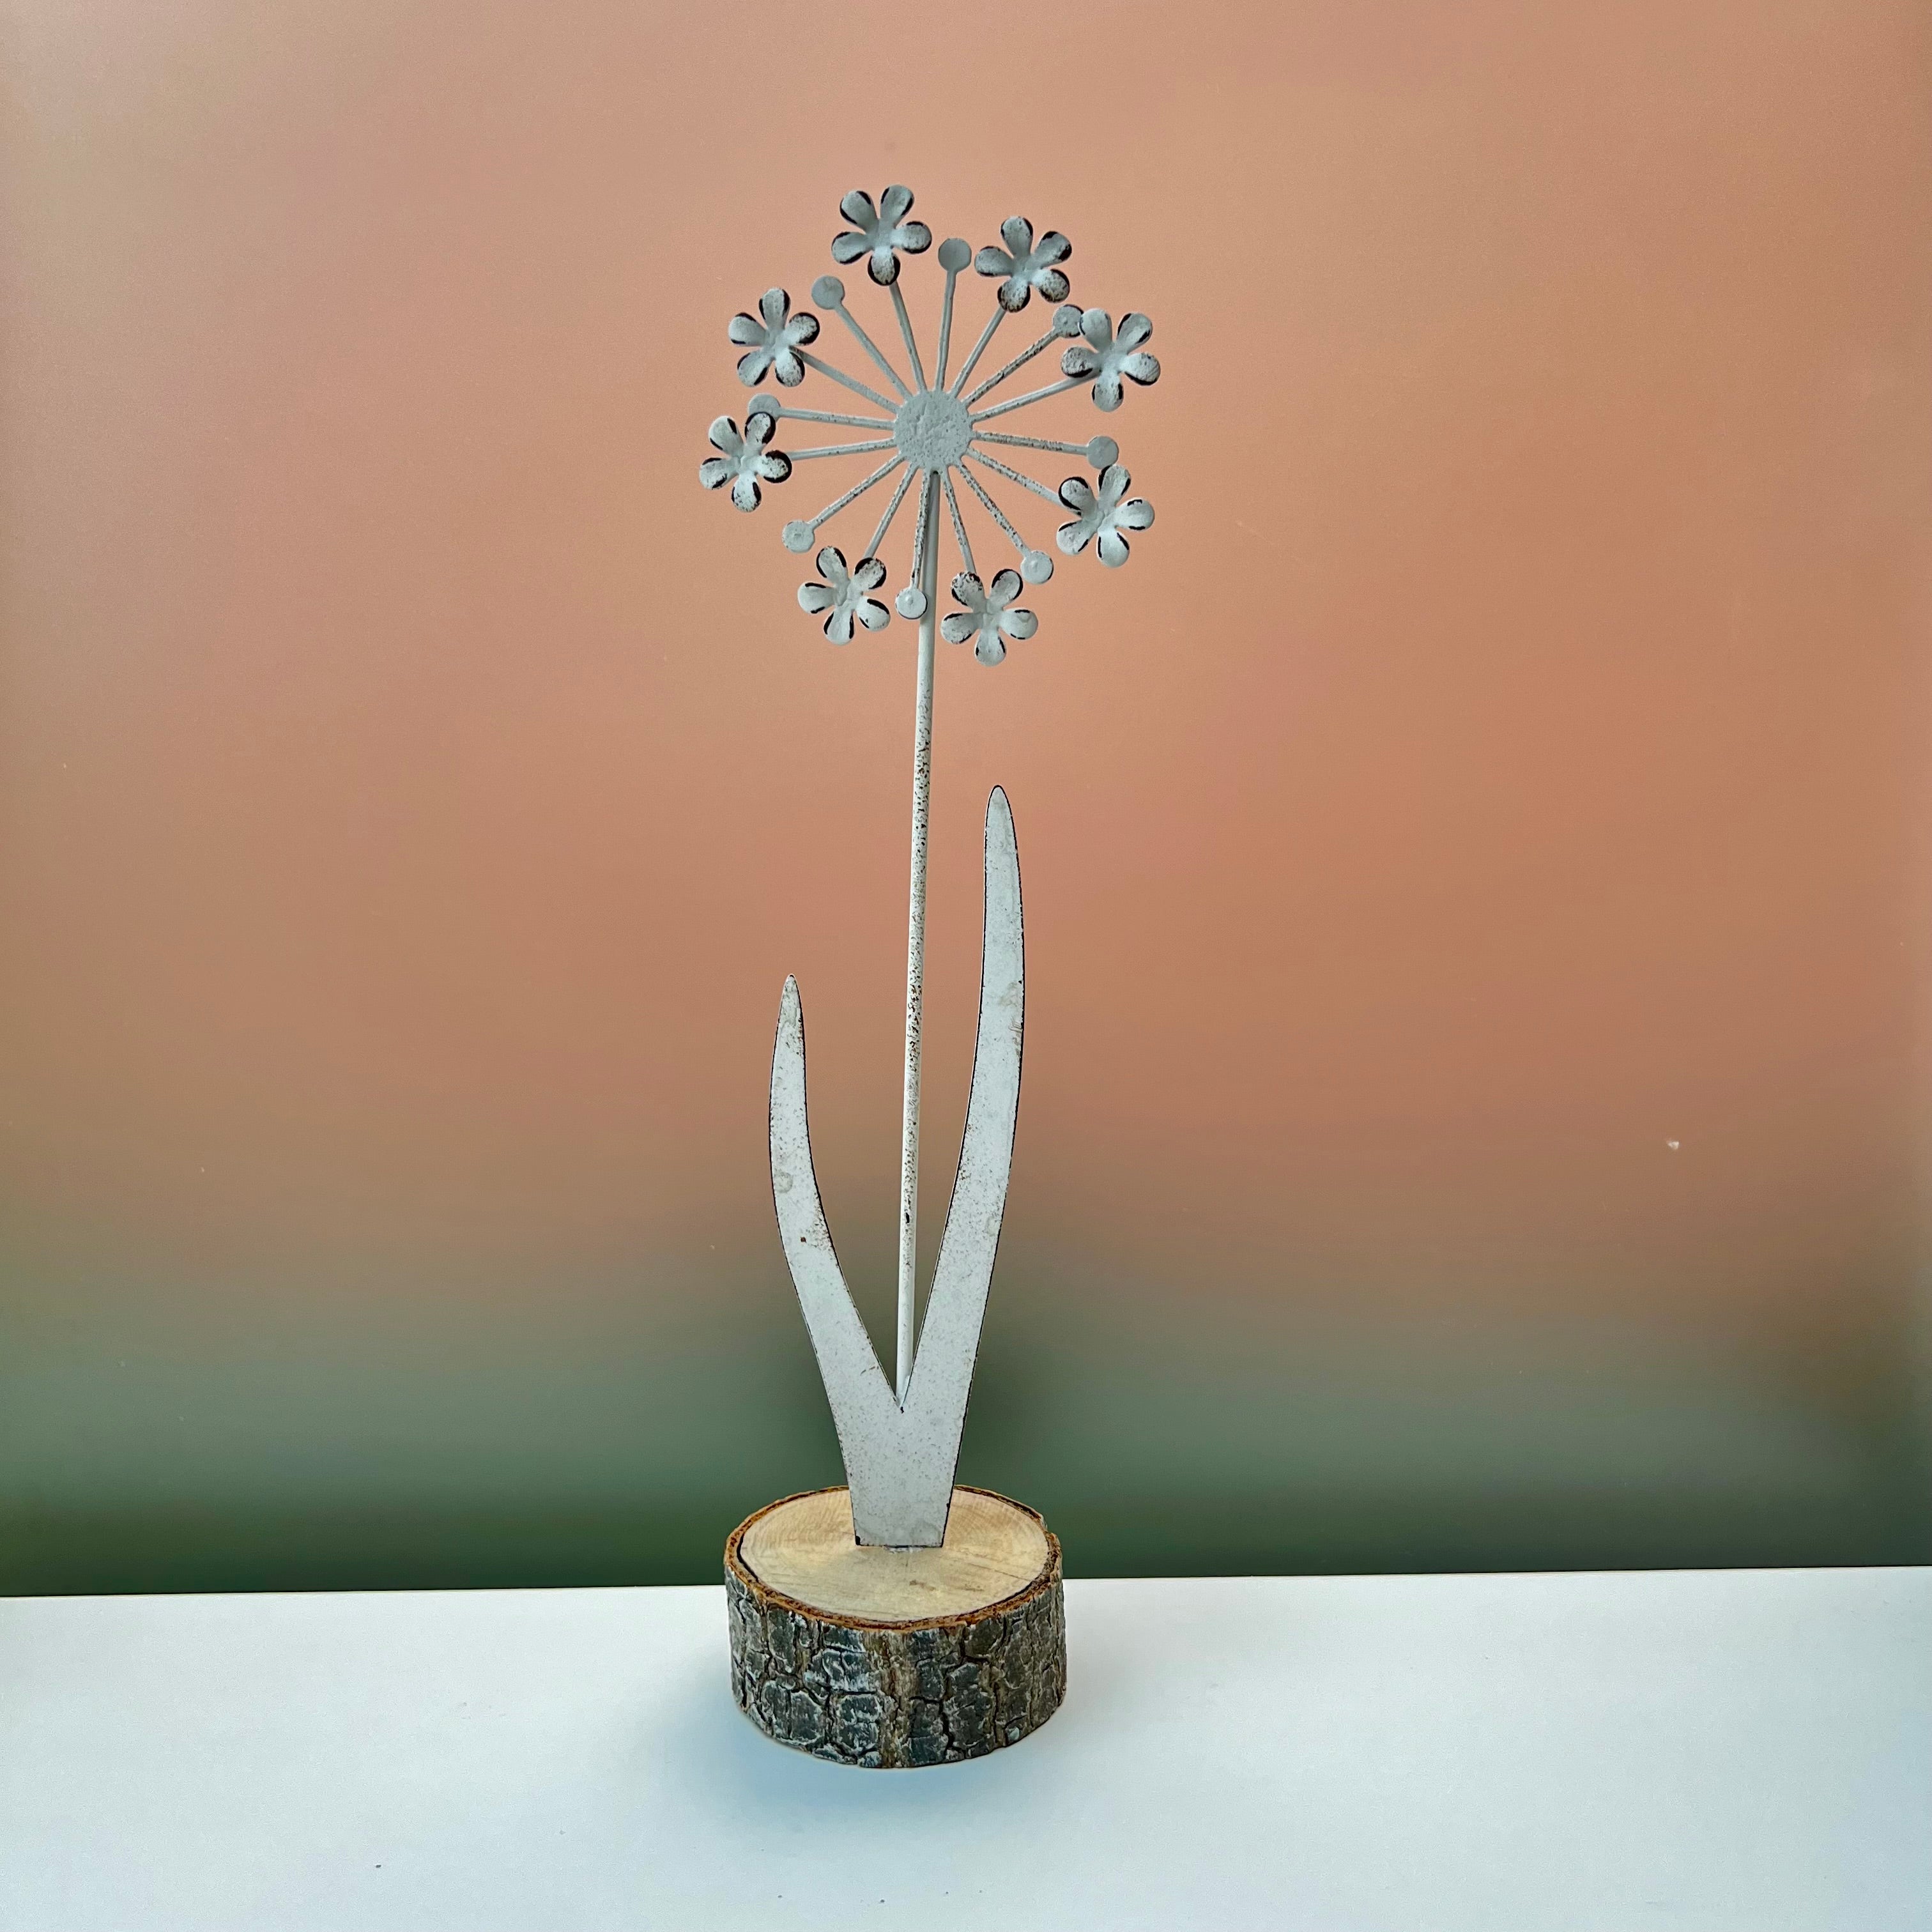 Metal Flower on Wooden Base Decoration